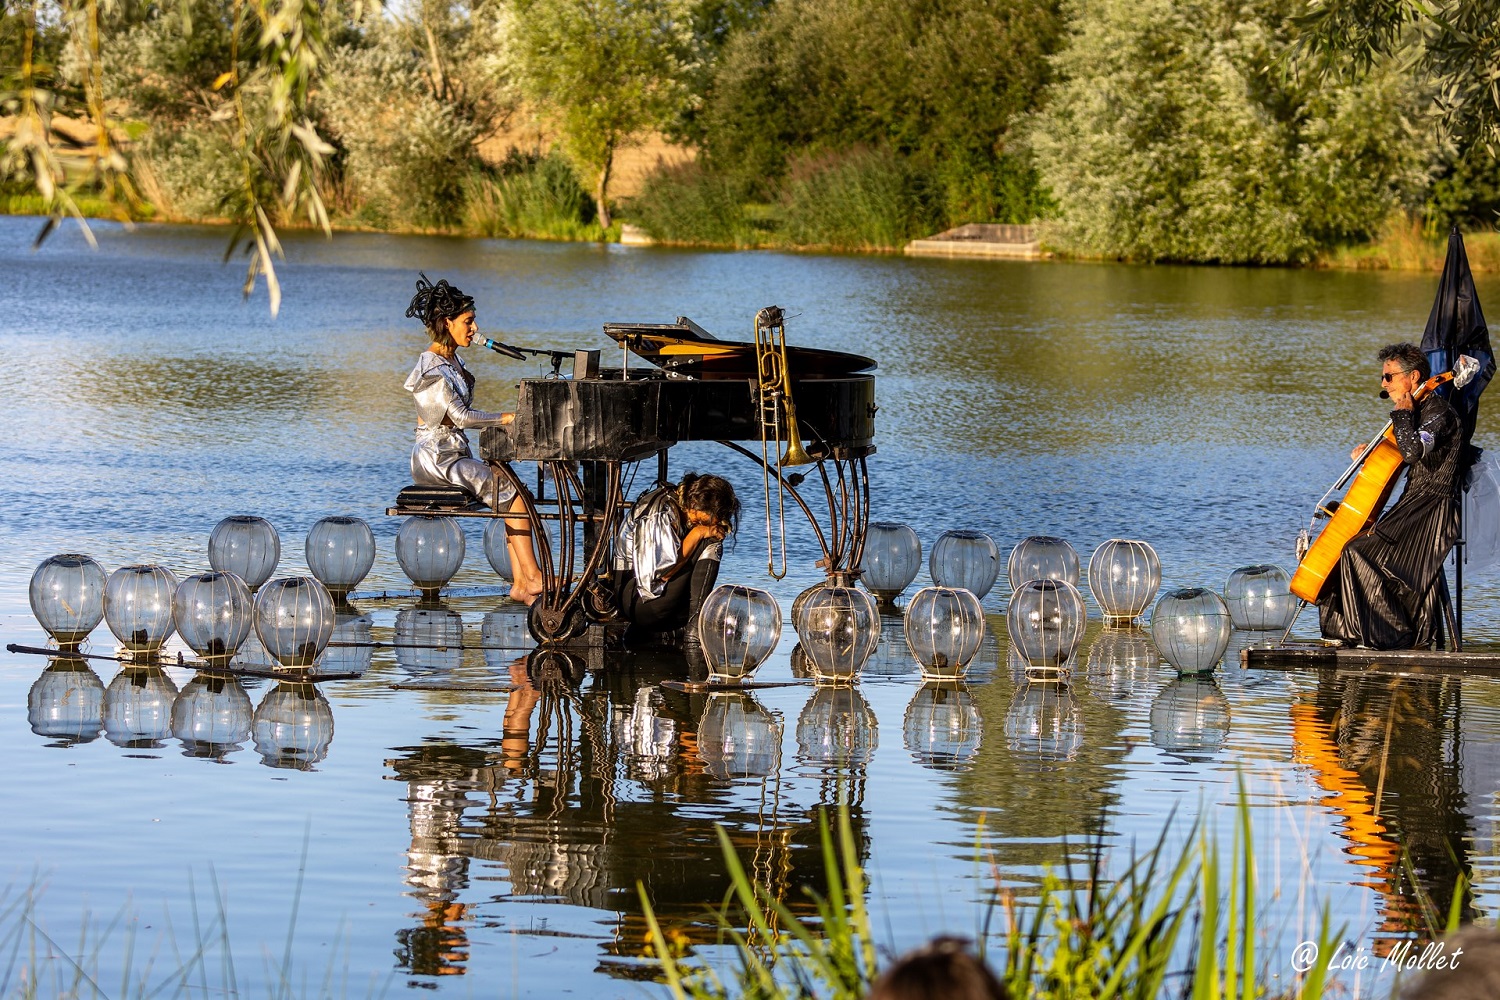 Le pianO du lac, concierto flotante en la Sierra Norte de Madrid